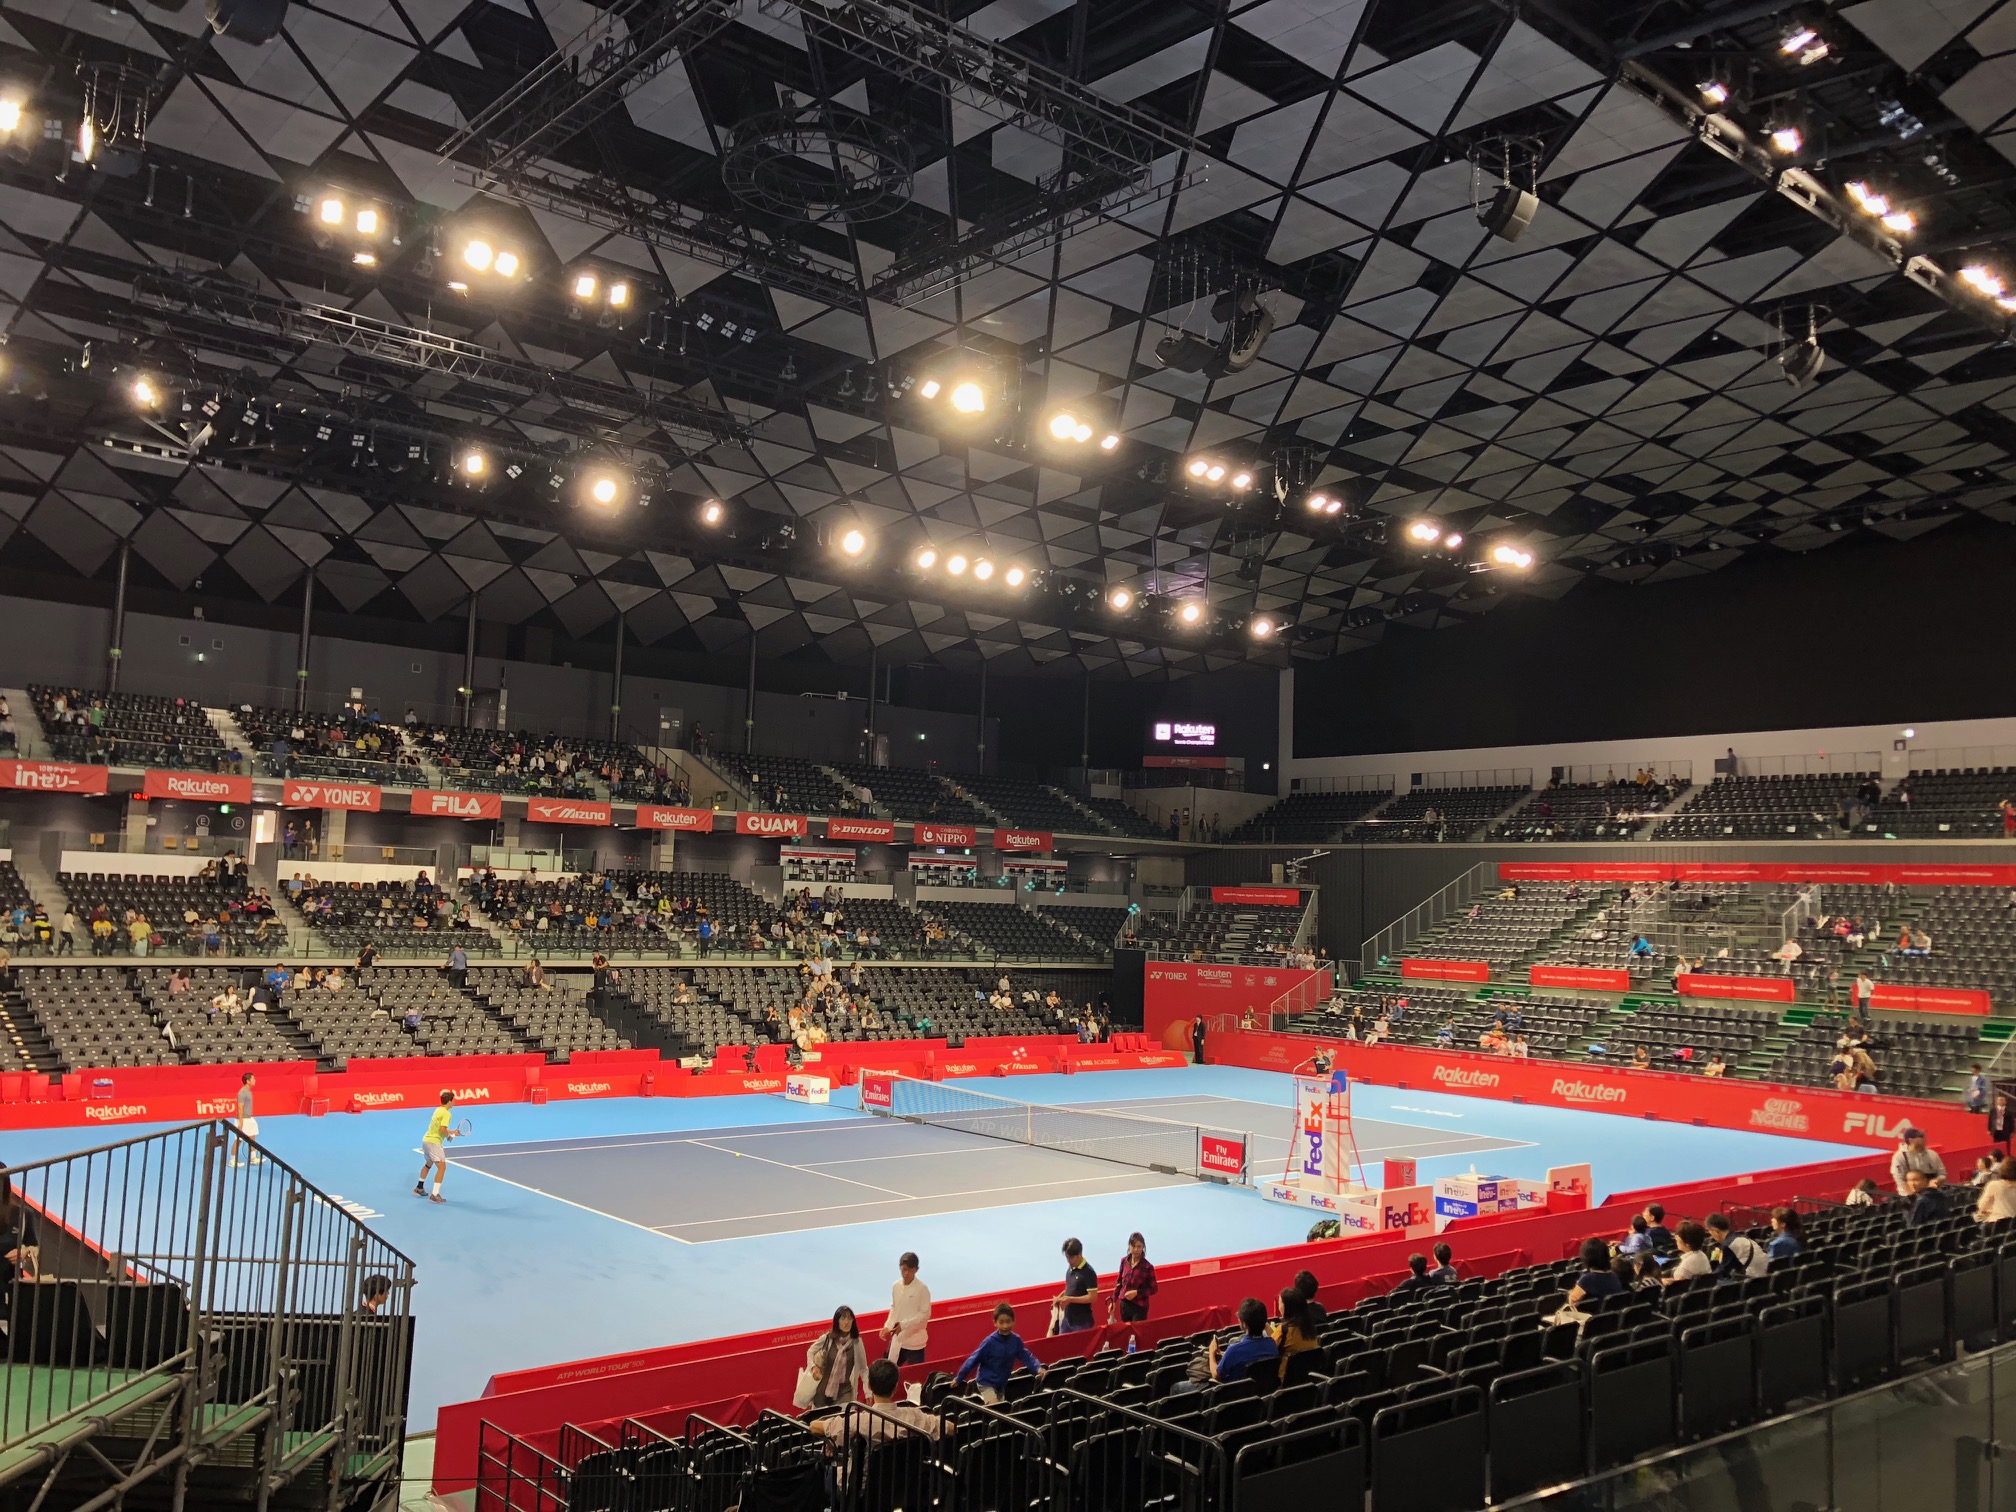 RAKUTEN JAPAN TENNIS OPEN 2018